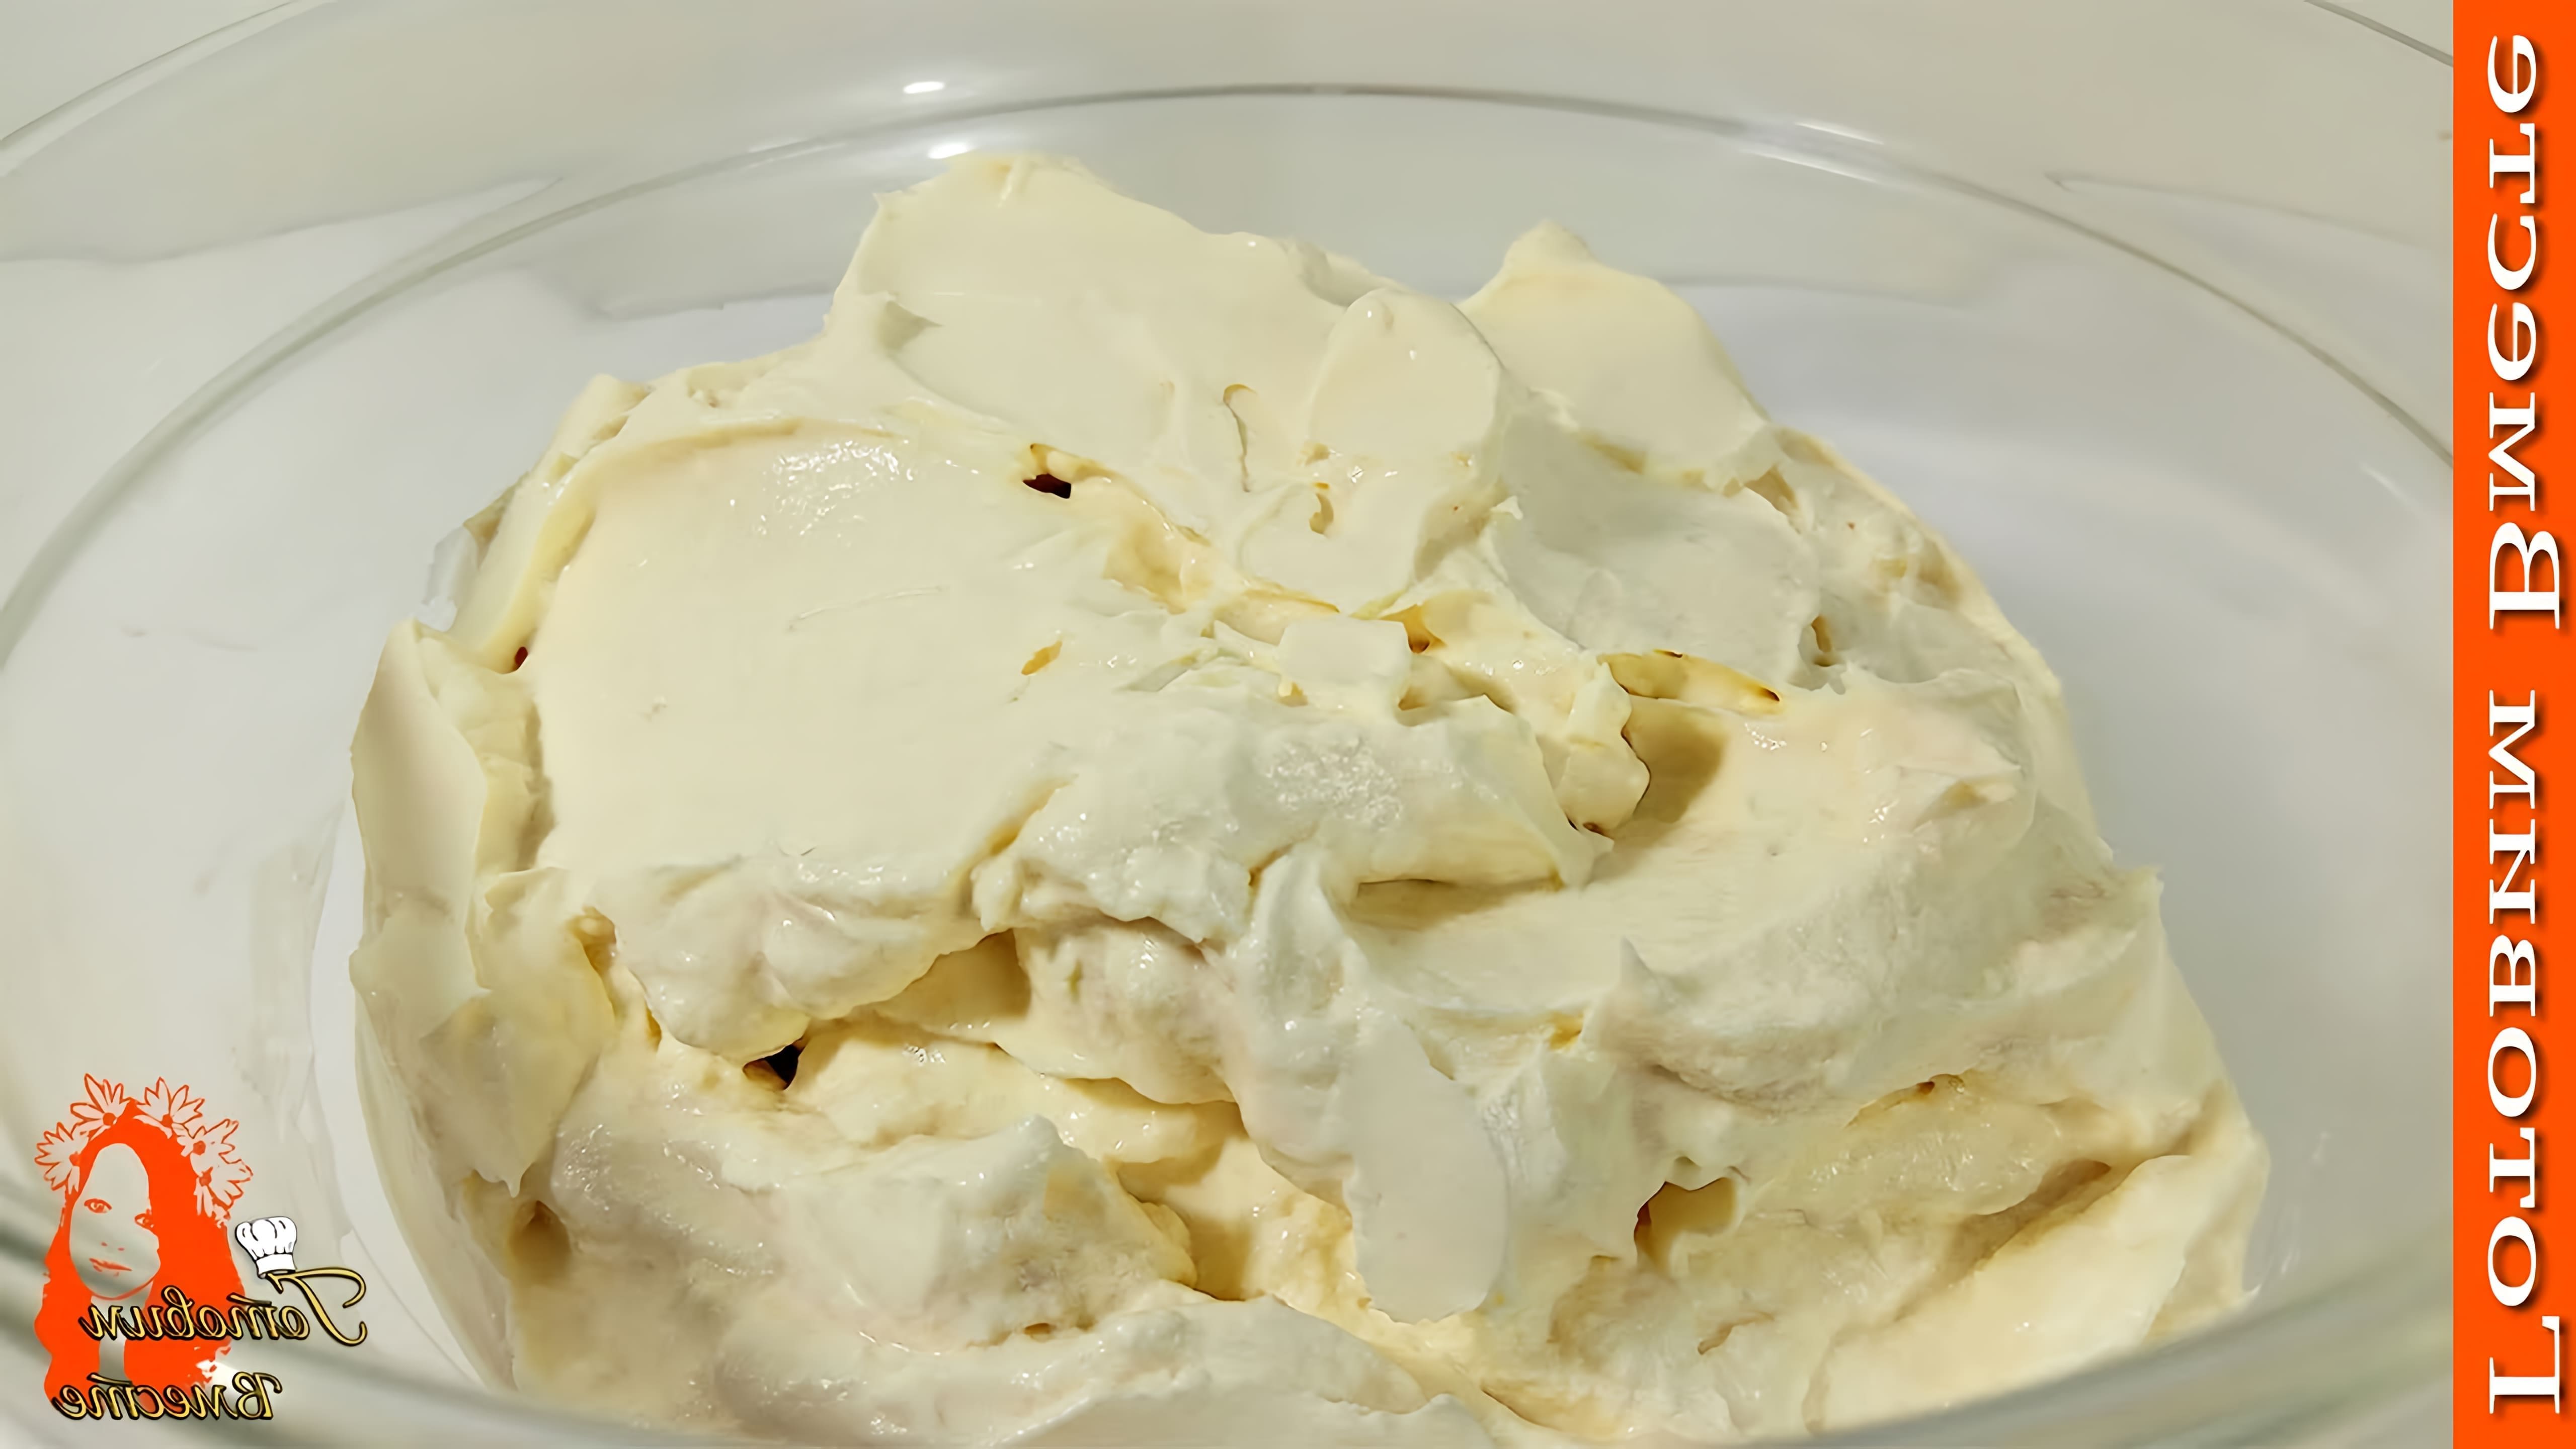 В этом видео демонстрируется рецепт приготовления домашнего крема "Крем Чиз"